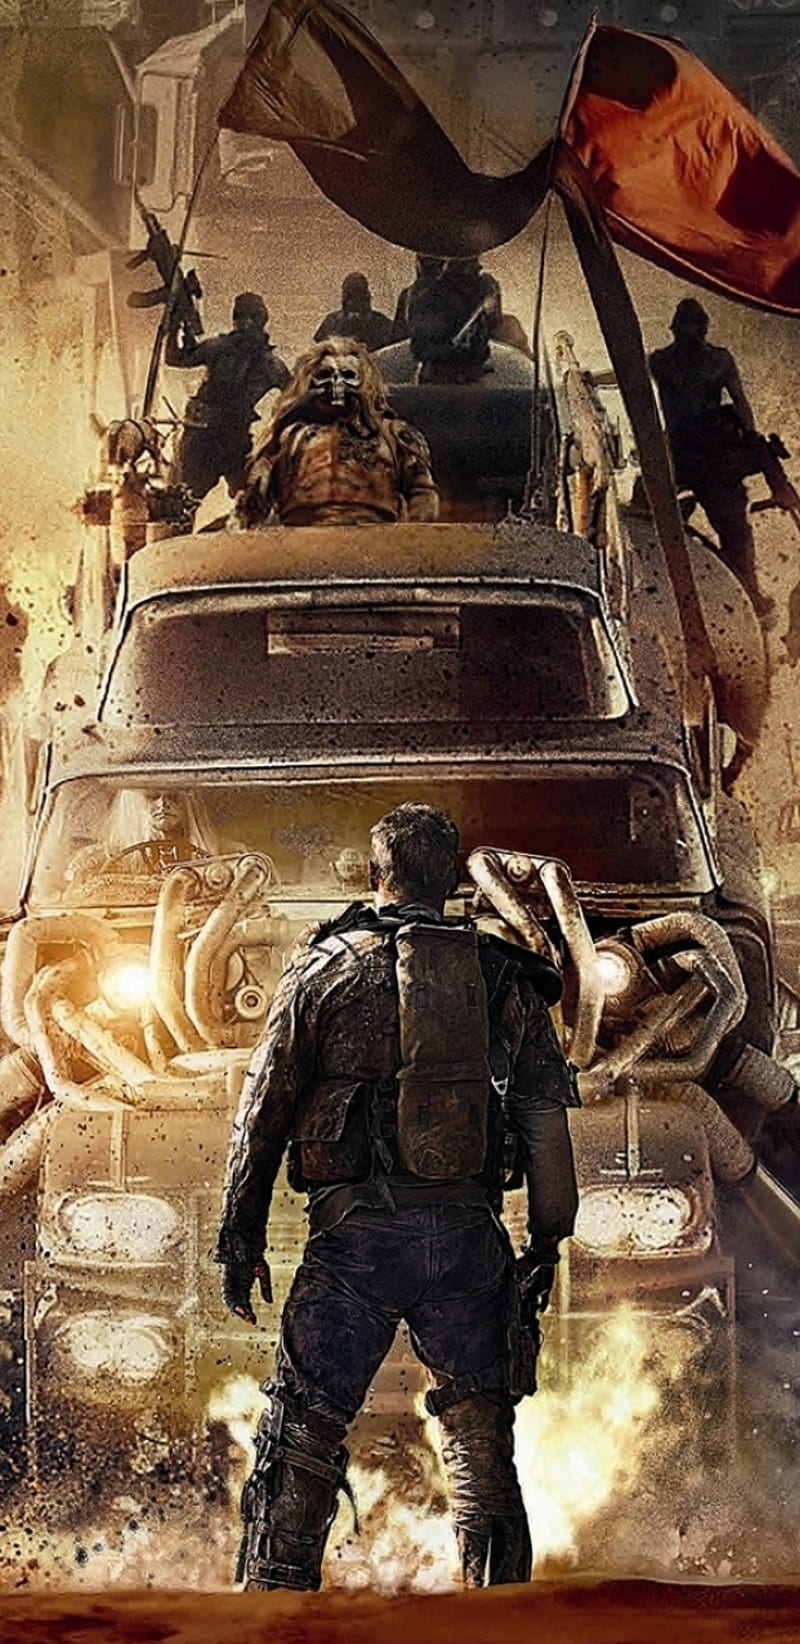 Mad Max Film Mad Max Fury Road Hd Phone Wallpaper Peakpx